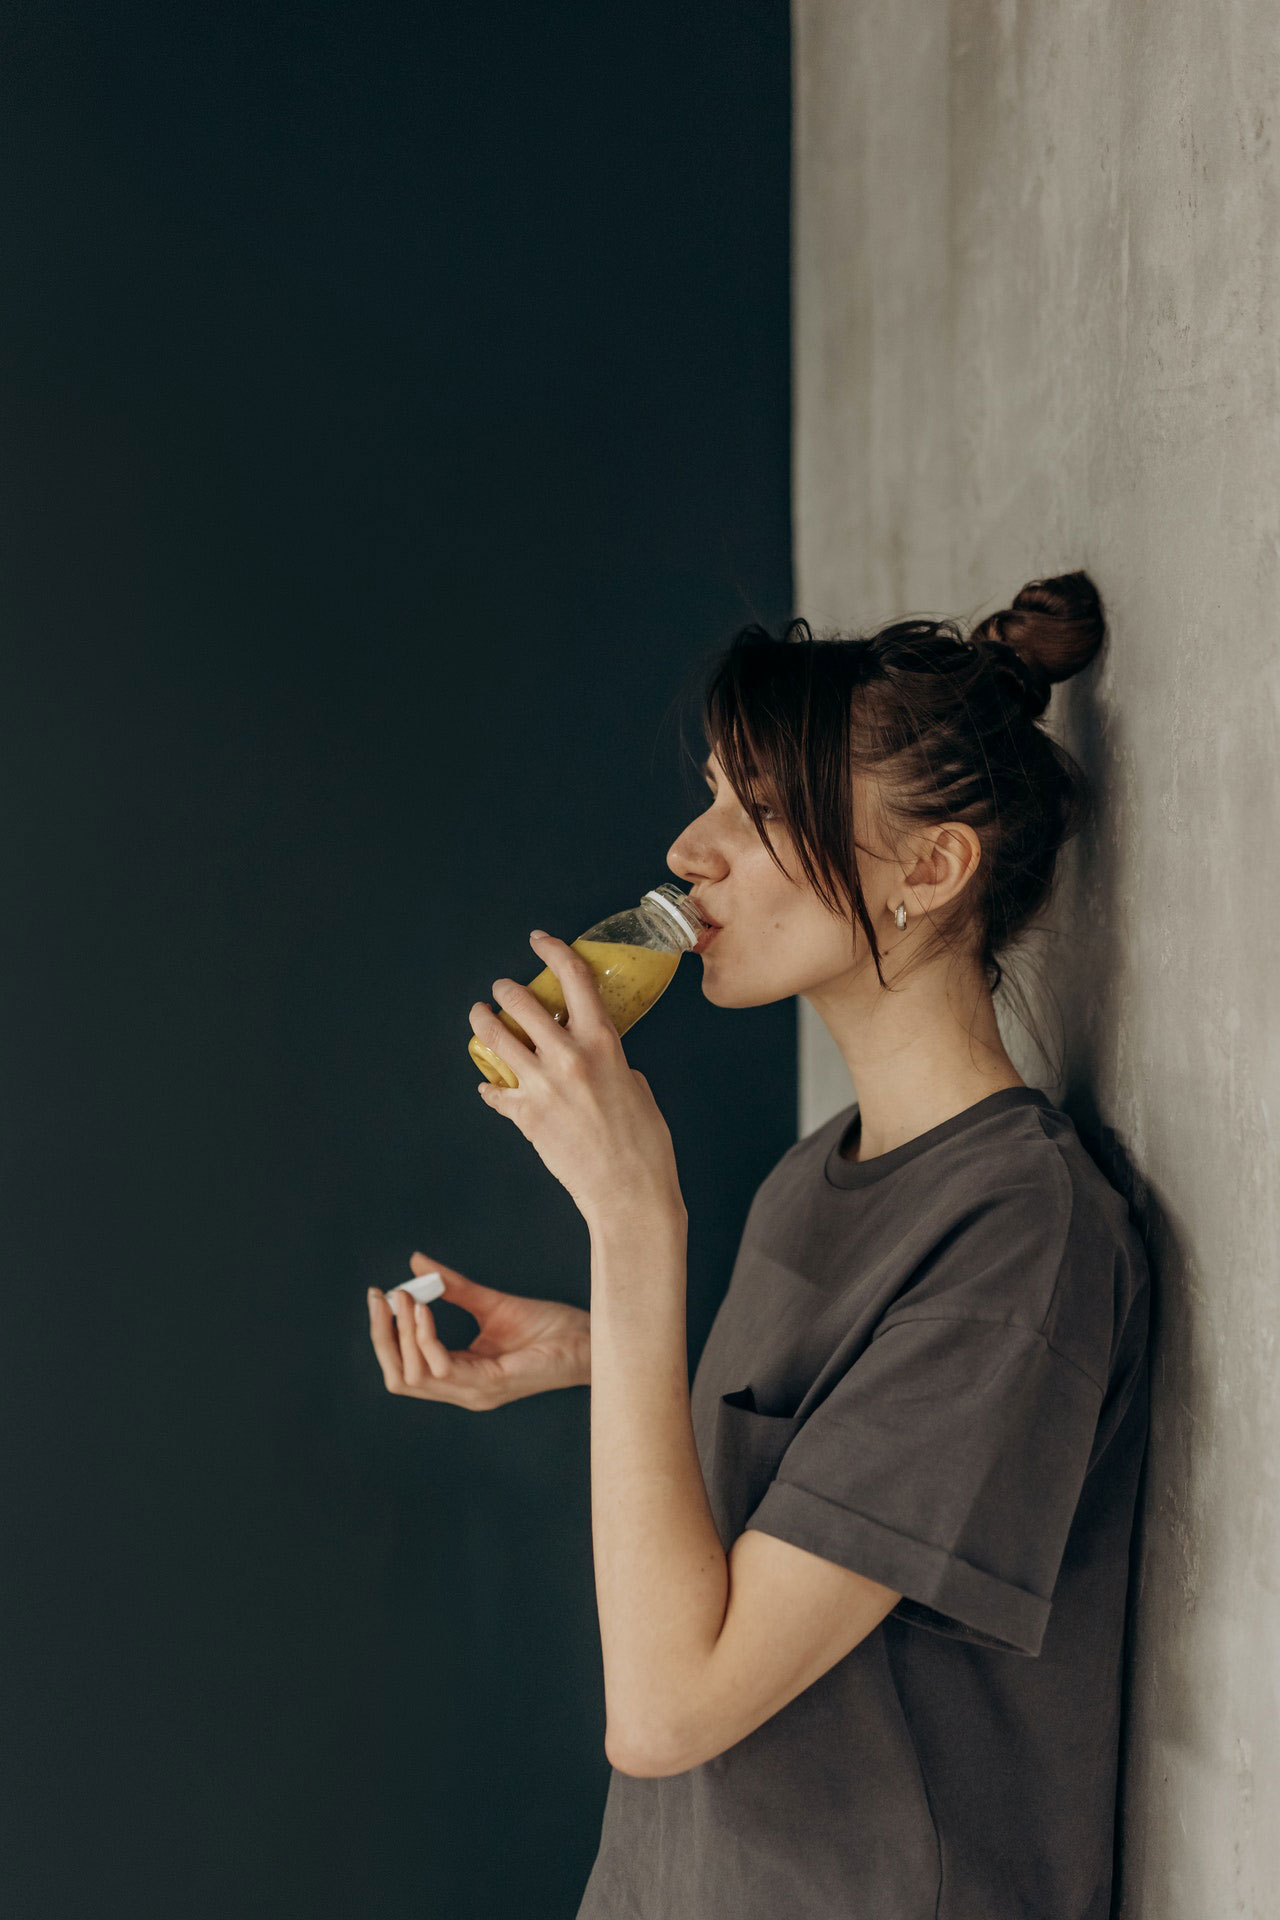 femme boit un jus pendant une cure de détox